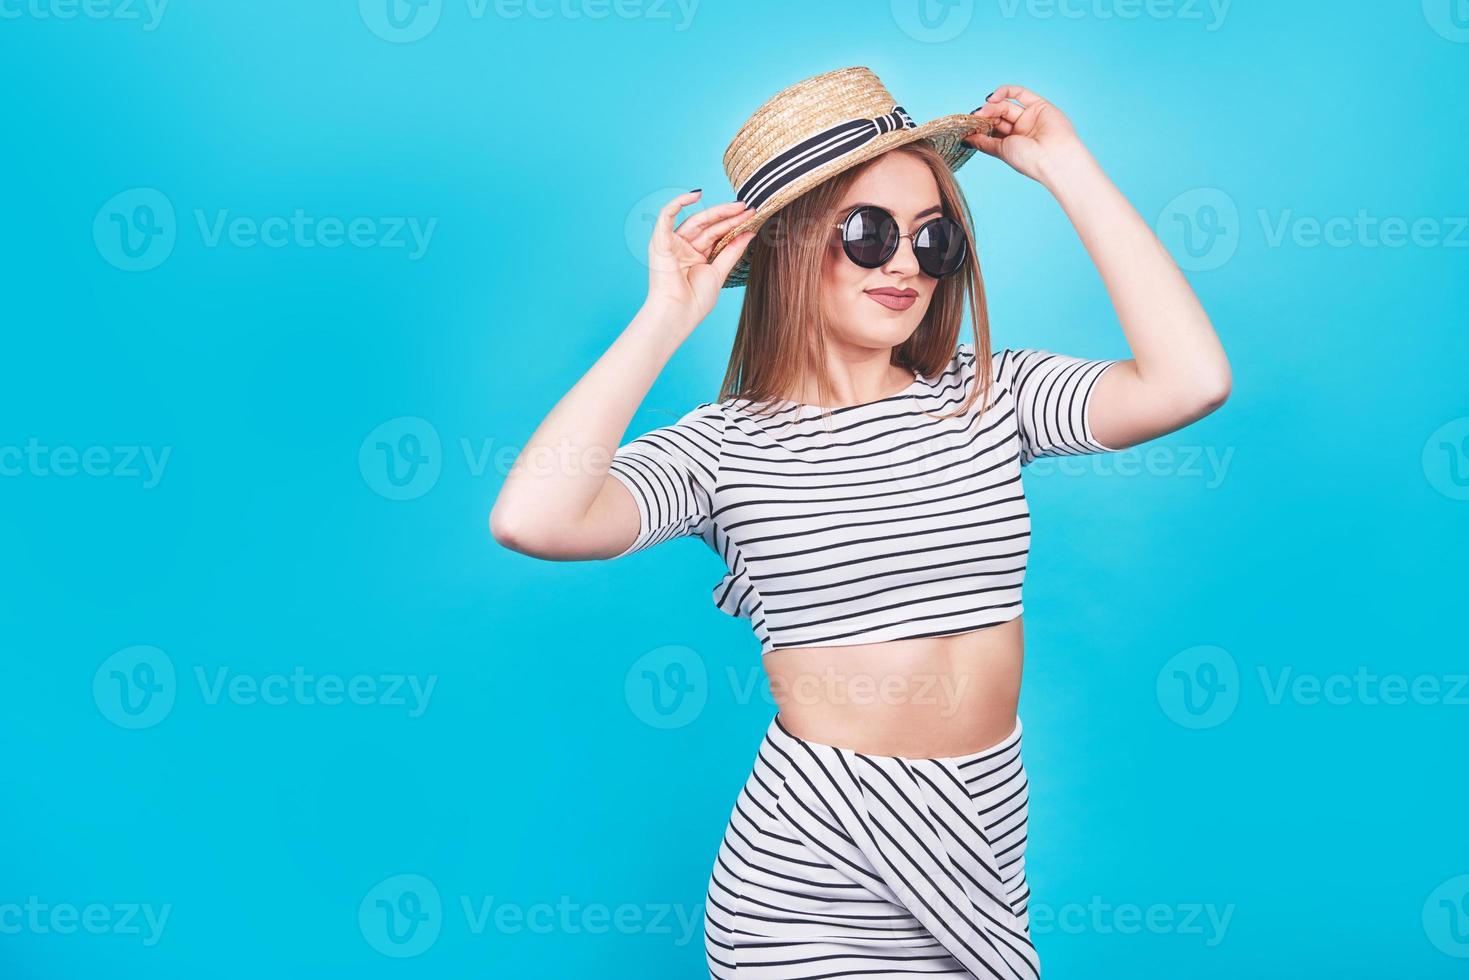 garota atraente em listras brancas e pretas, chapéu, óculos escuros, boca emocionalmente aberta sobre um fundo azul brilhante com um corpo perfeito. isolado. tiro de estúdio foto